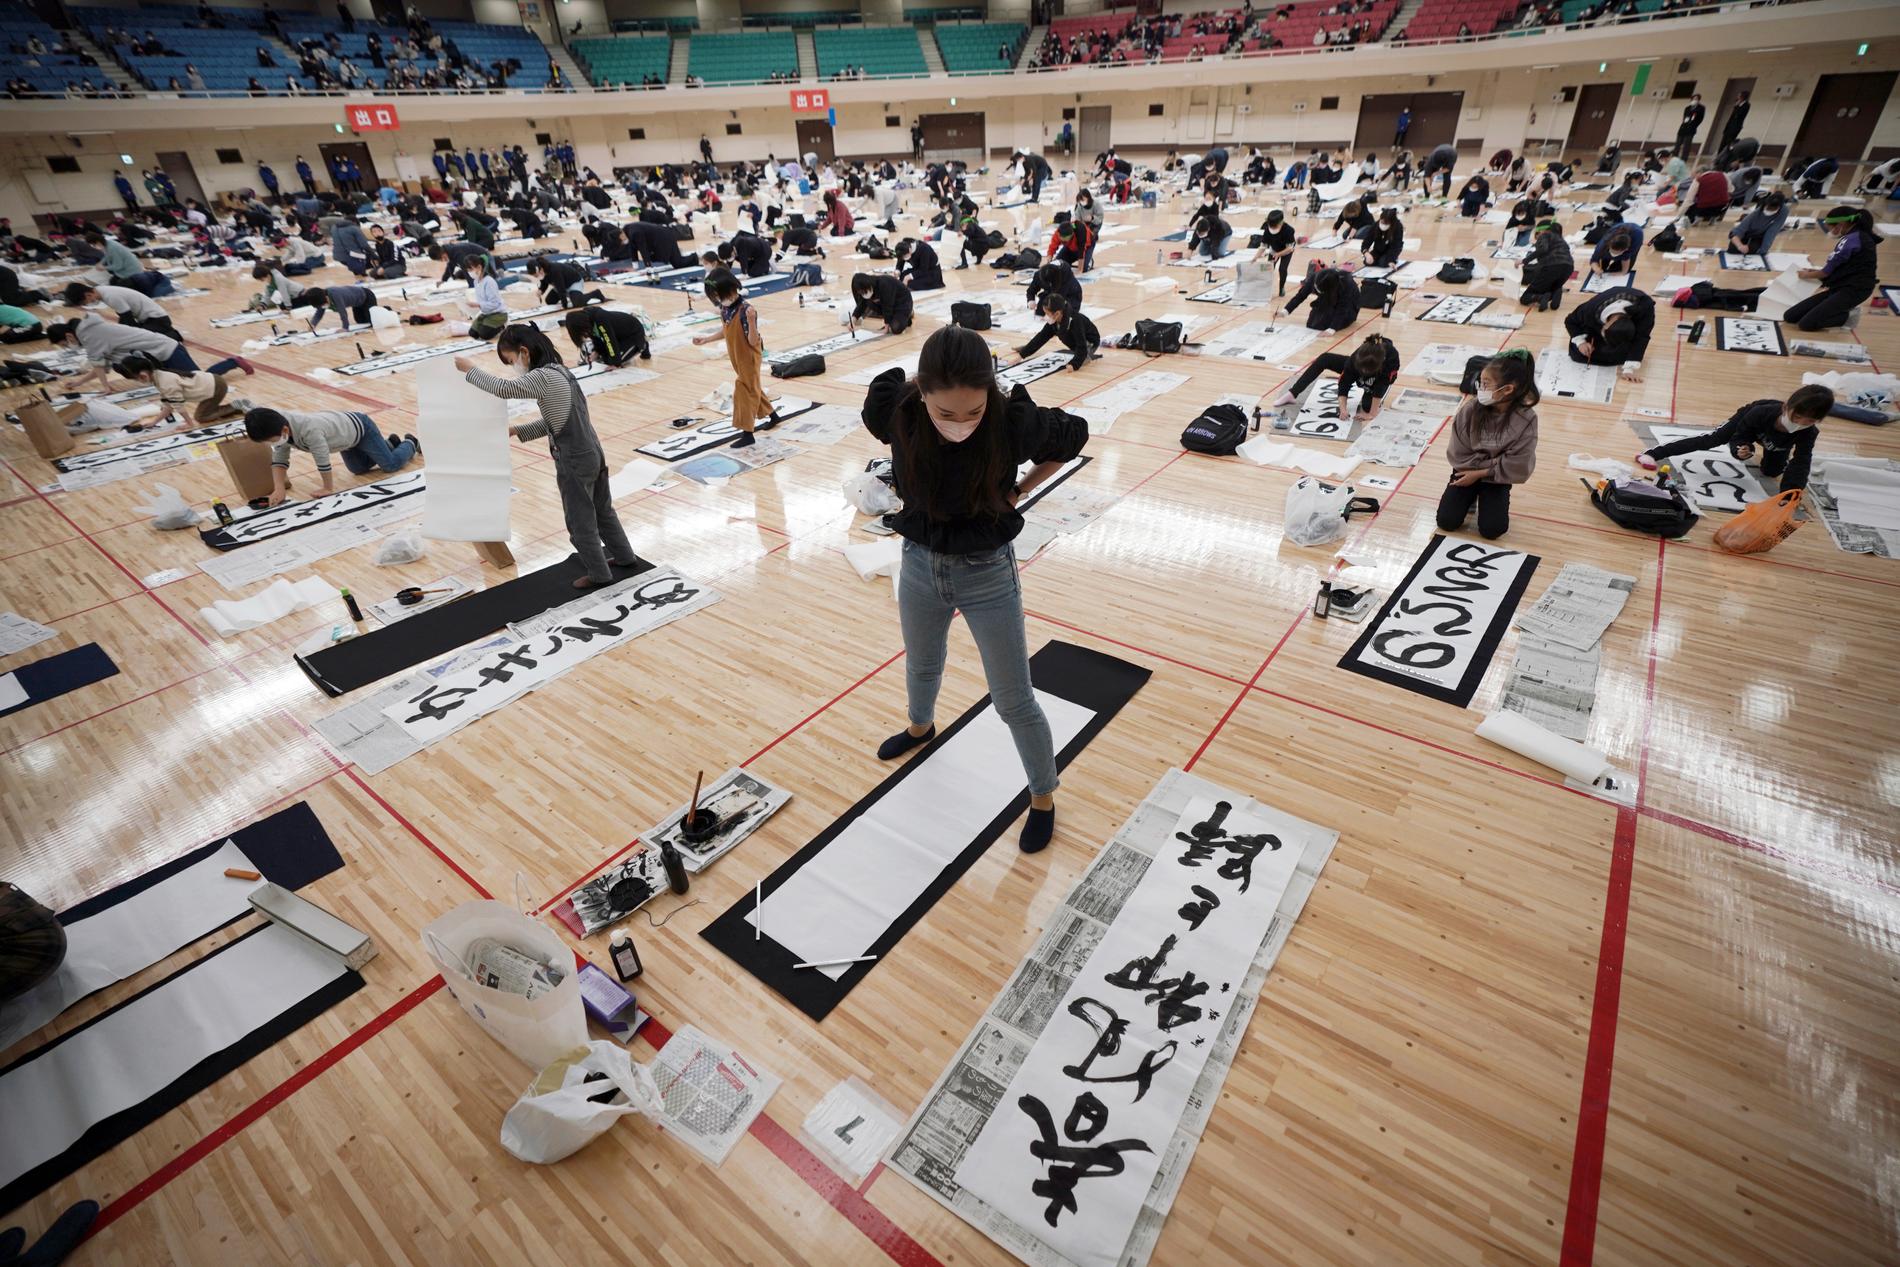 För några dagar sedan hölls den årliga kalligrafitävlingen i Budokan kampsportsarena i Tokyo.